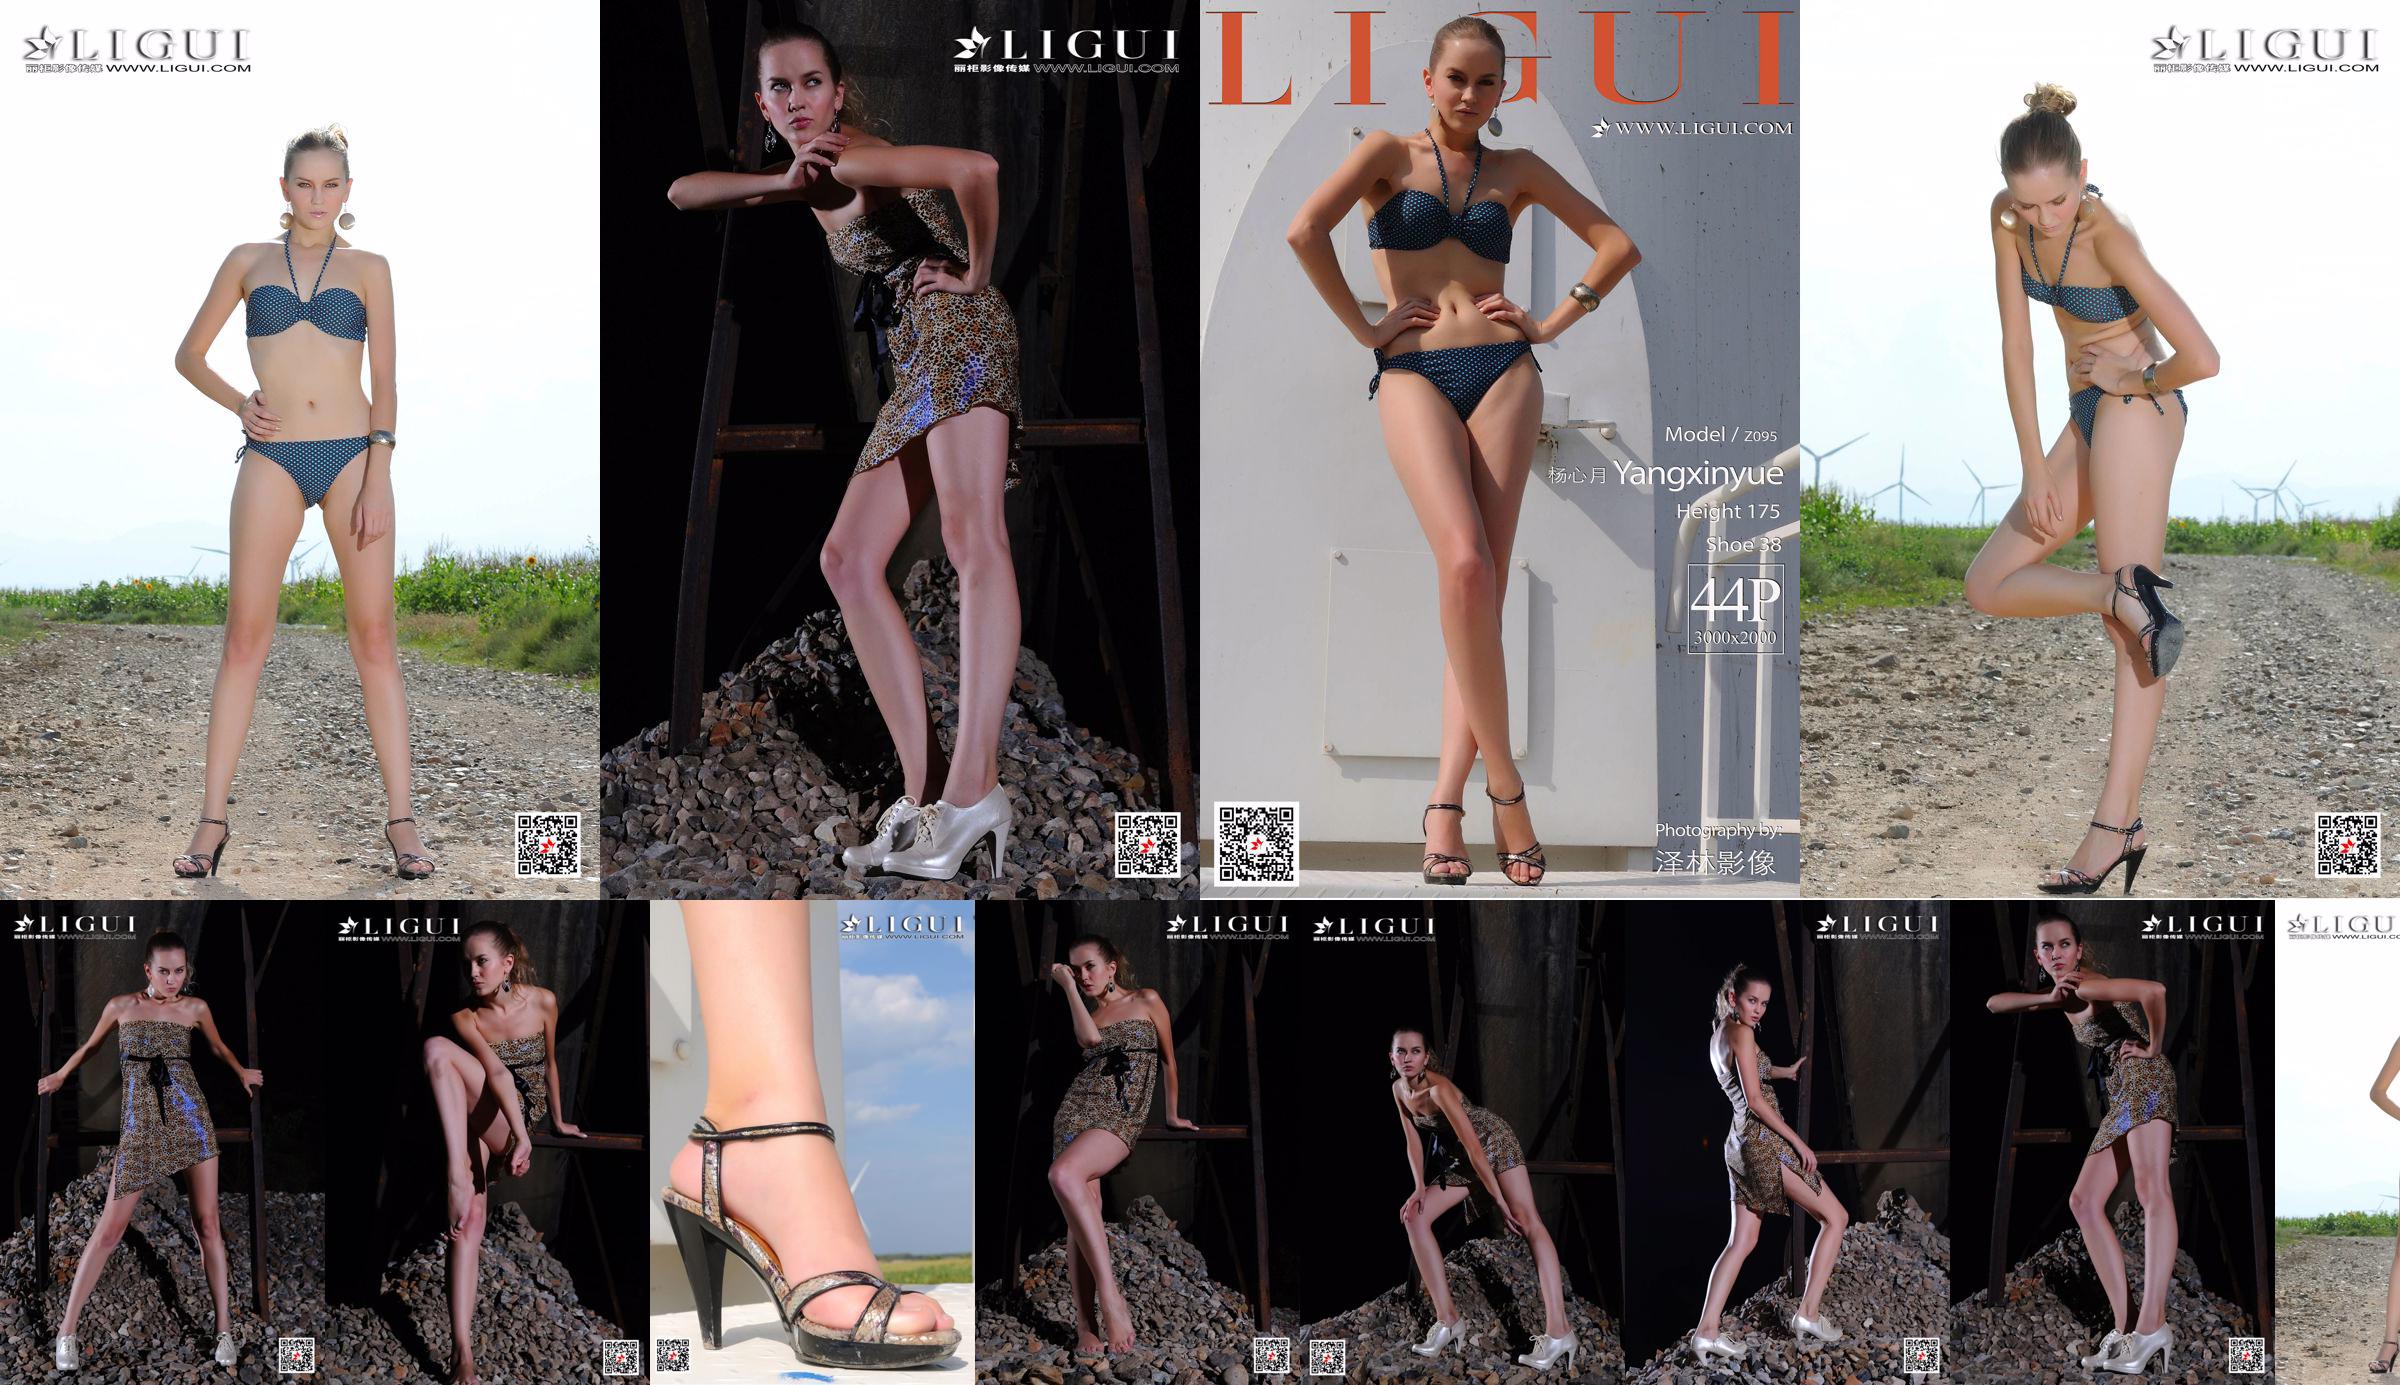 [丽柜Ligui] Model Yang Xinyue "Bikini" No.5ed2e1 Page 1